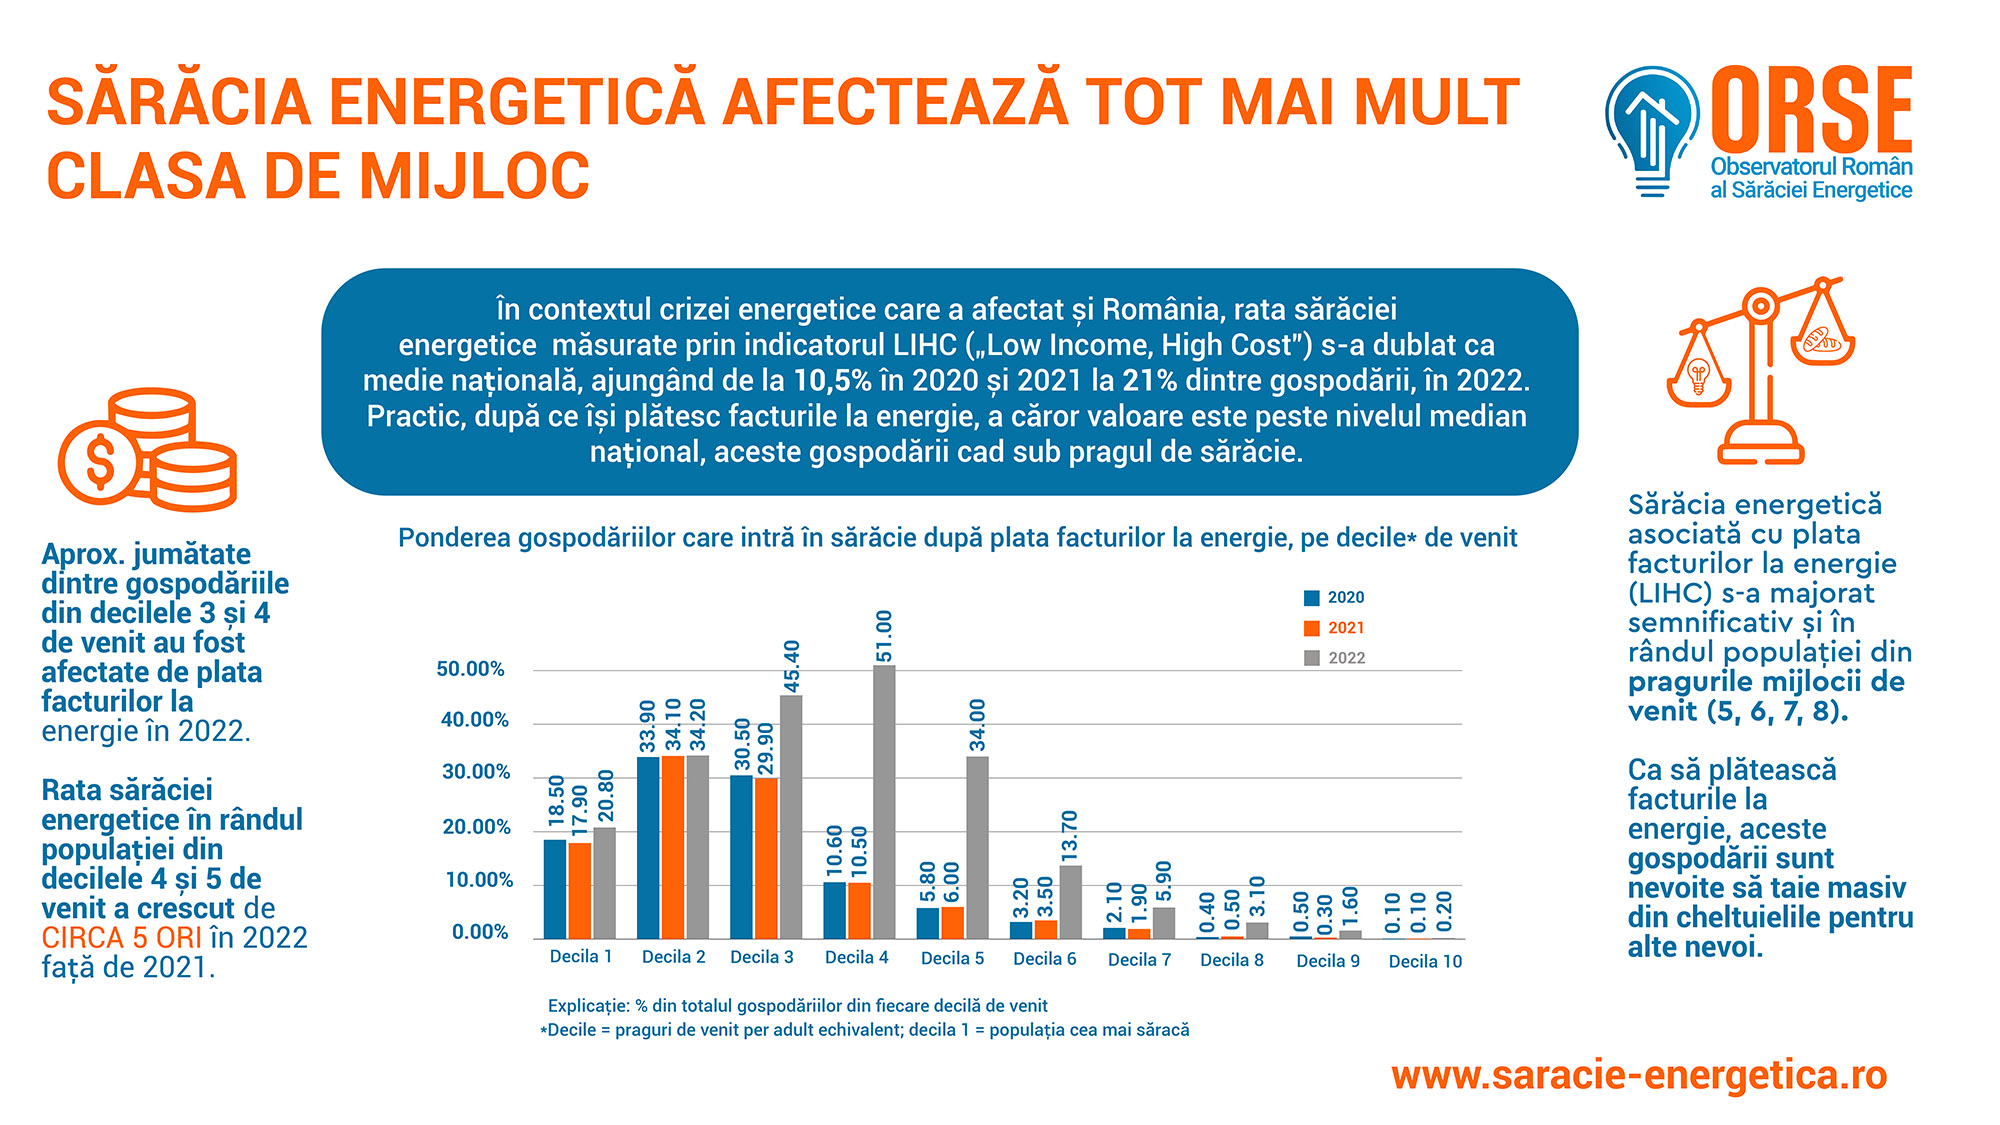 ORSE: Gospodăriile cu venituri medii din România sunt tot mai afectate de sărăcie energetică